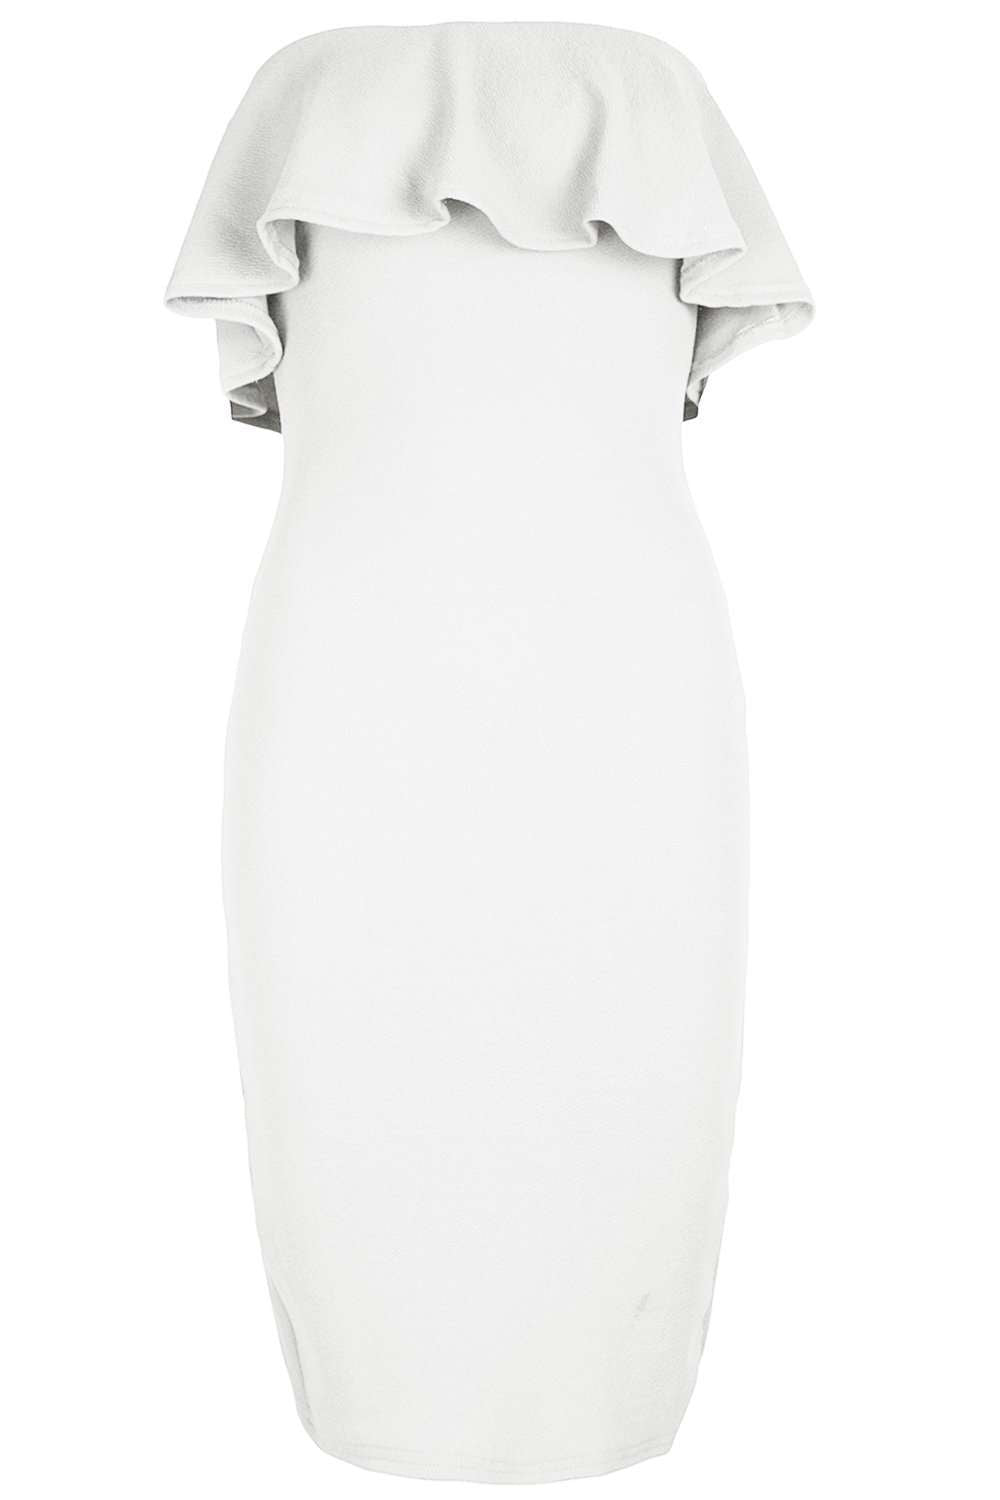 Emilia Cold Shoulder Frill Bodycon Dress - bejealous-com